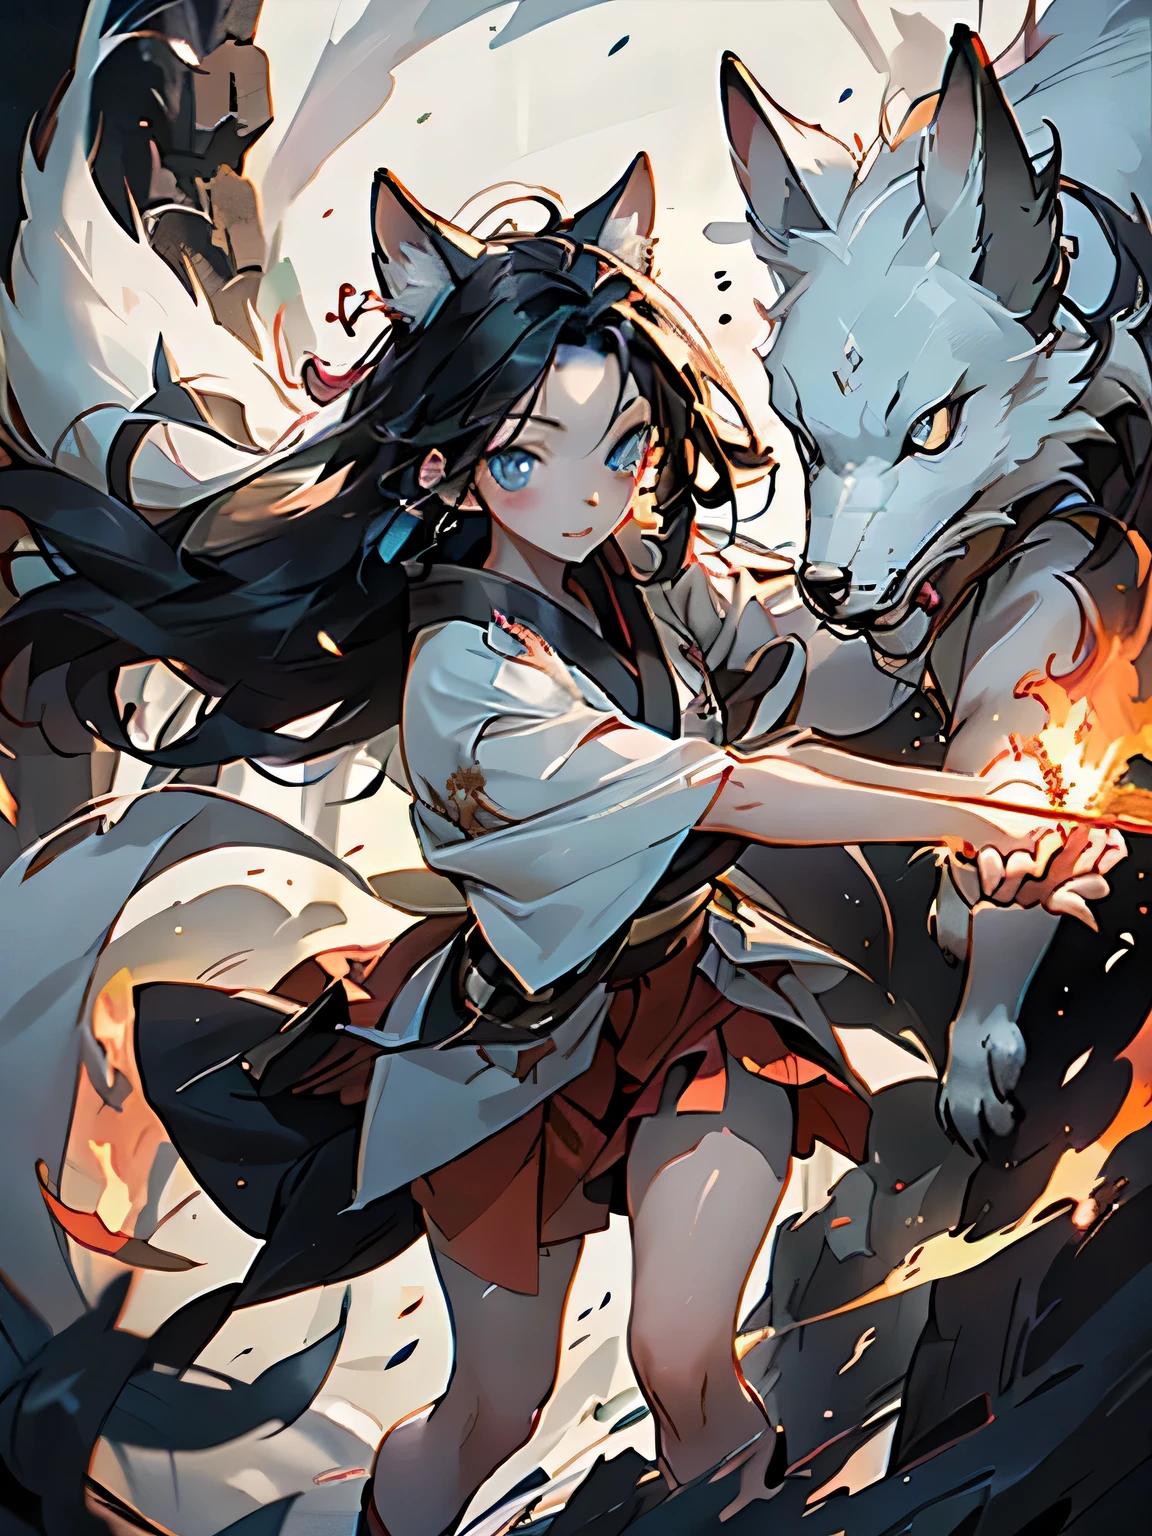 소녀 1명,키모노,긴 검은 머리,불타는 막대기를 손에 들고,짧은 치마,파란 눈,공격을 준비하다,뒤에는 흰여우가 있어요